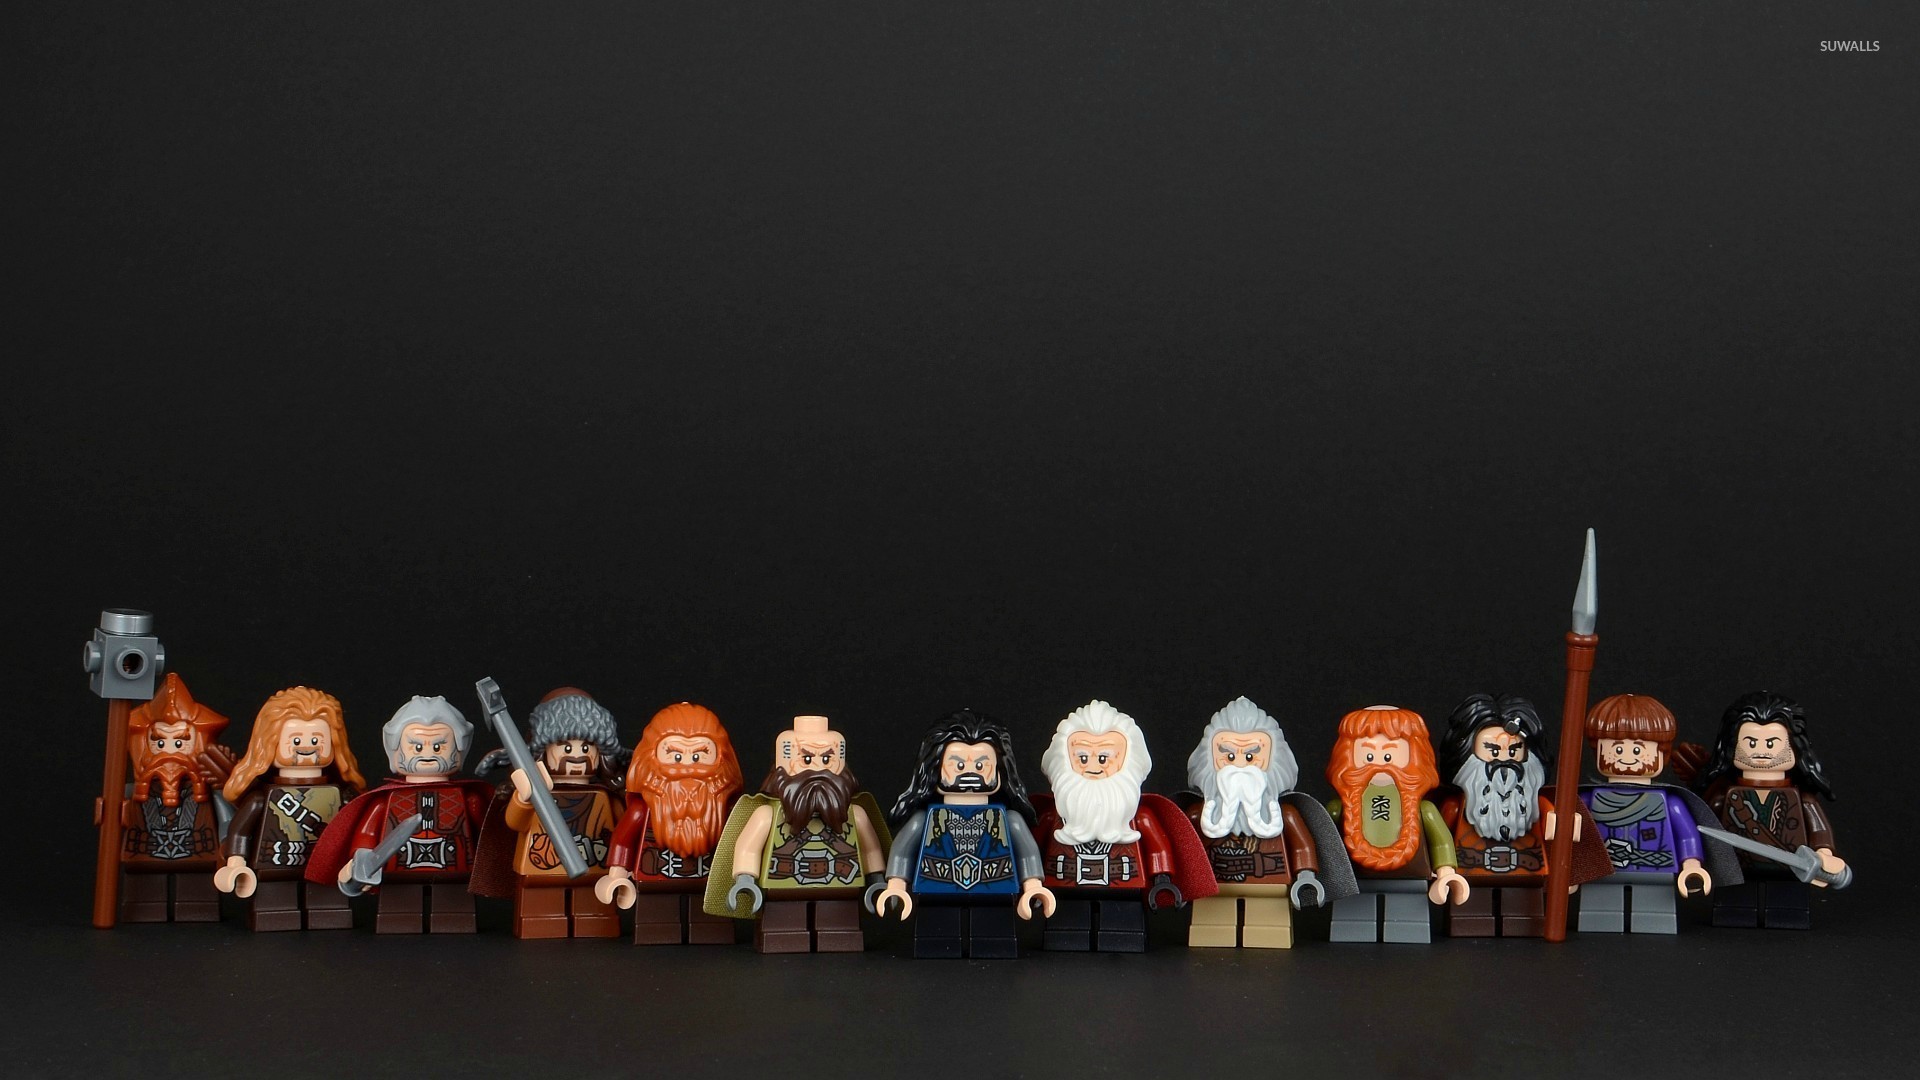 Lego Hobbit All Dwarf , HD Wallpaper & Backgrounds